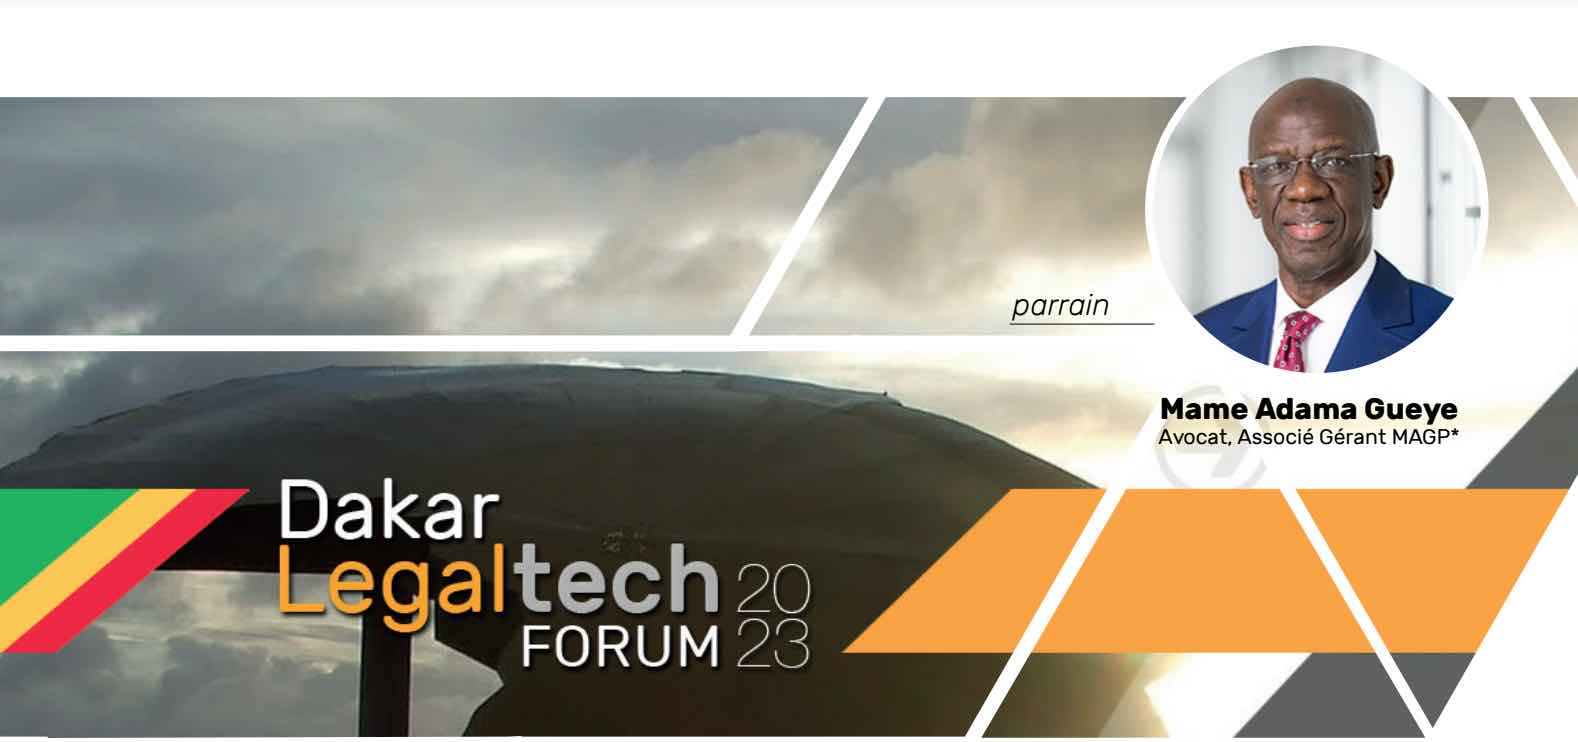 L’Université numérique Cheikh Hamidou KANE organise la 2e édition du Dakar Legaltech Forum